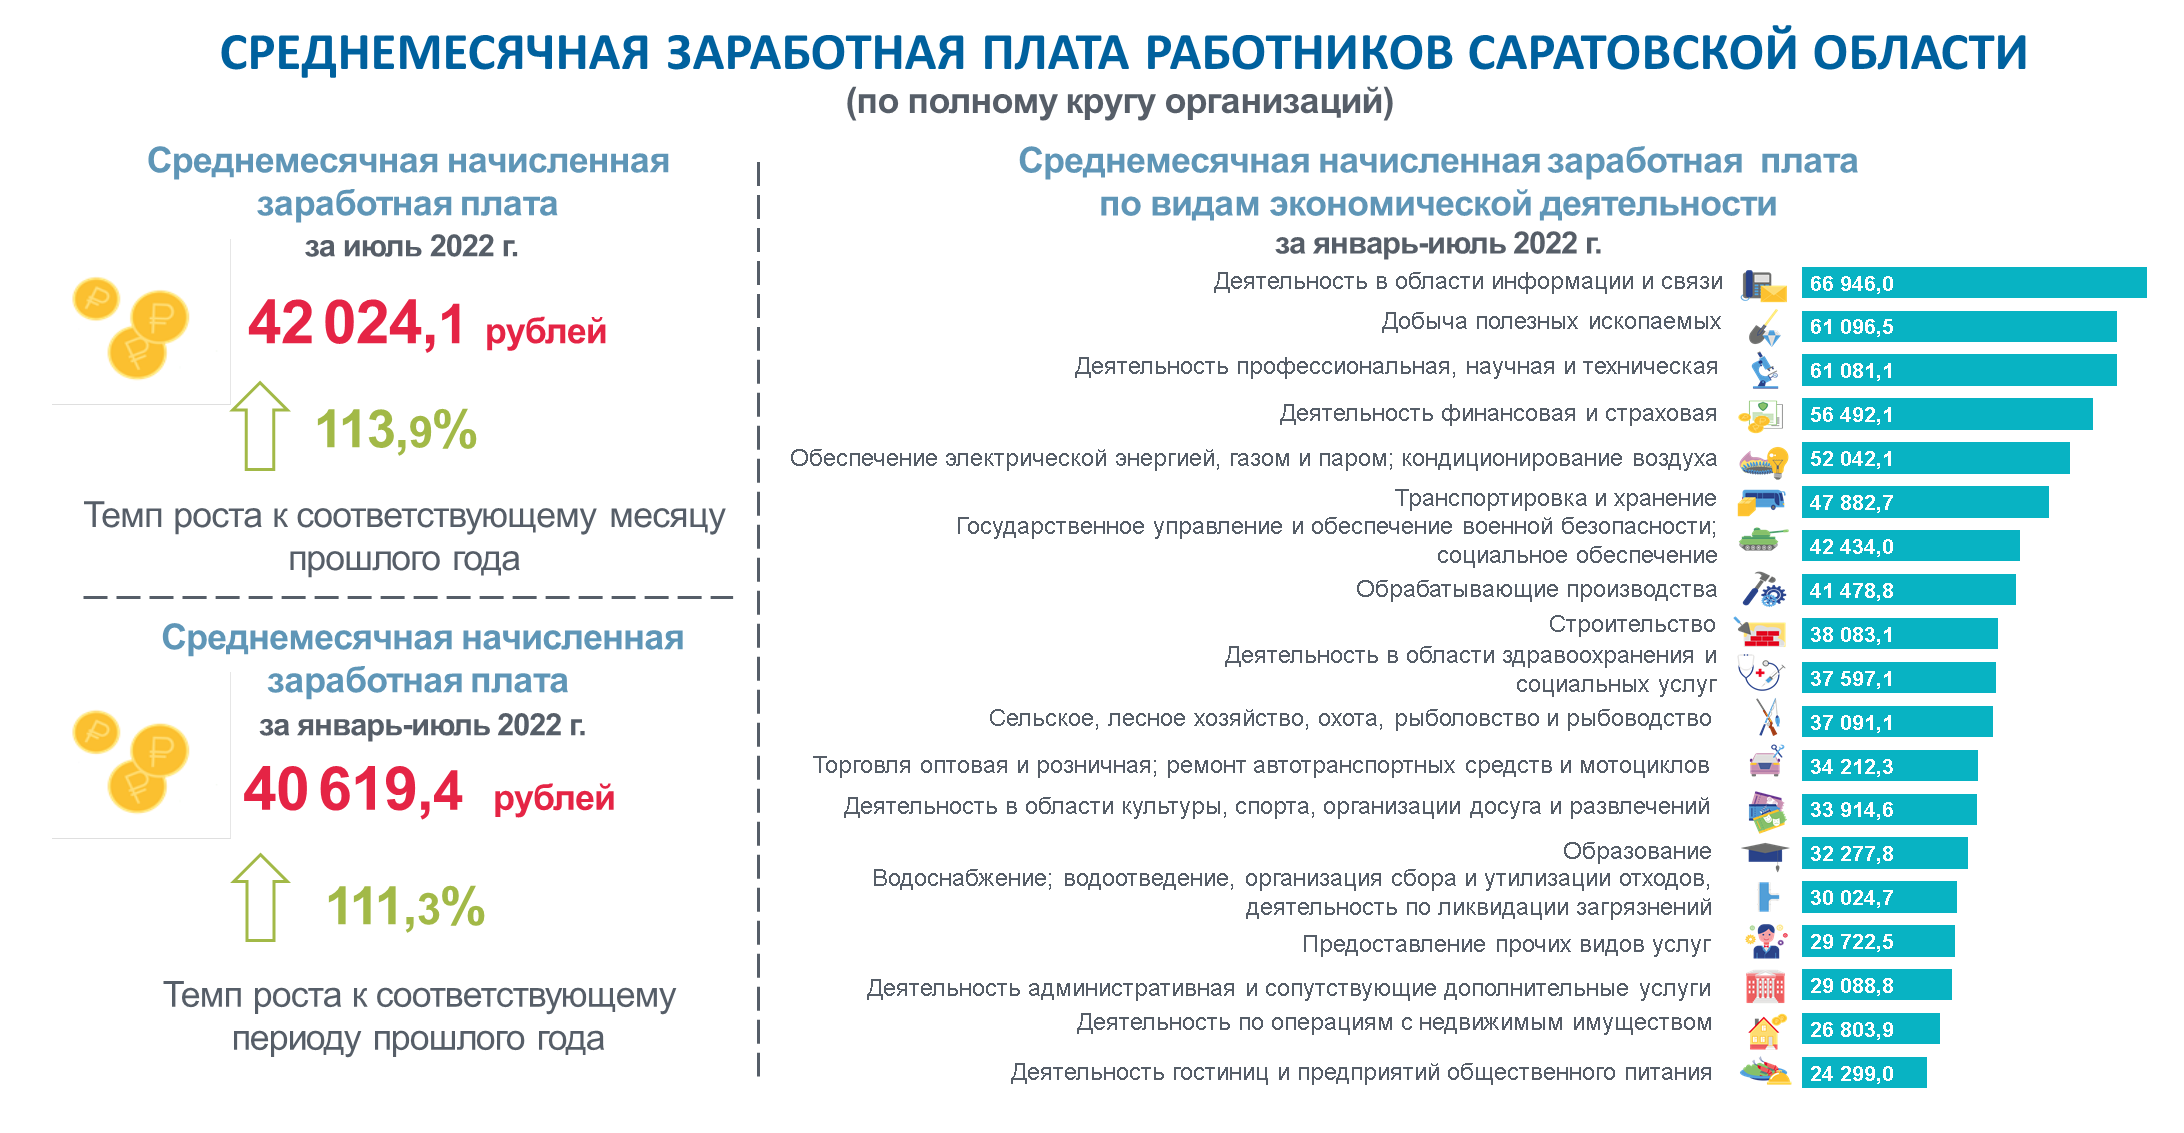 Среднемесячная заработная плата работников Саратовской области за июль 2022 года